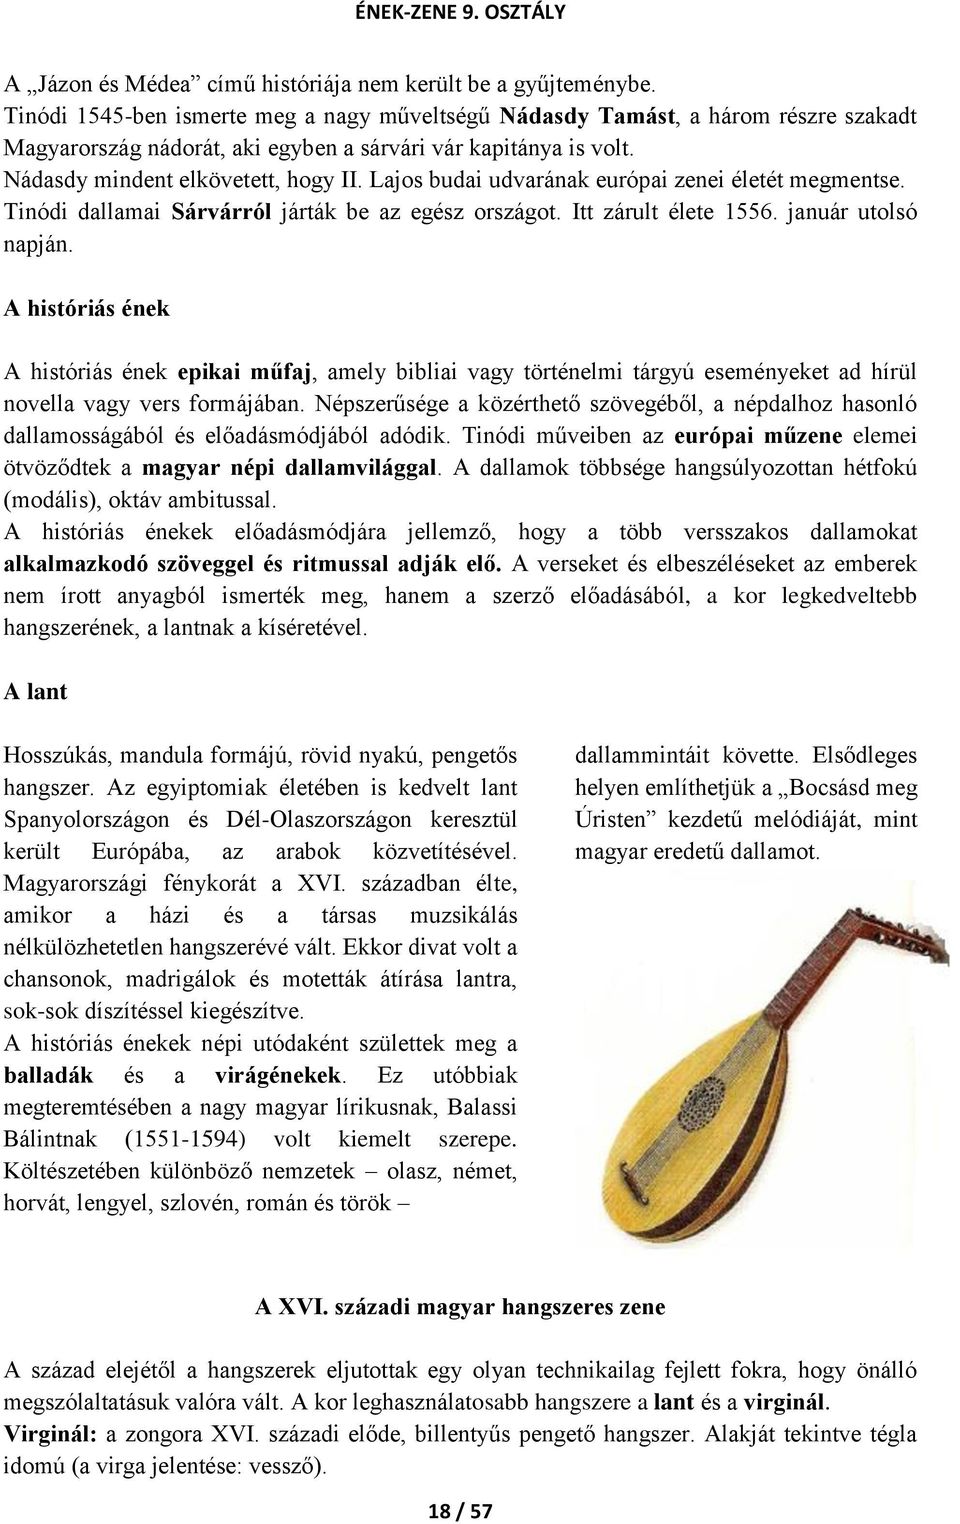 Lajos budai udvarának európai zenei életét megmentse. Tinódi dallamai Sárvárról járták be az egész országot. Itt zárult élete 1556. január utolsó napján.